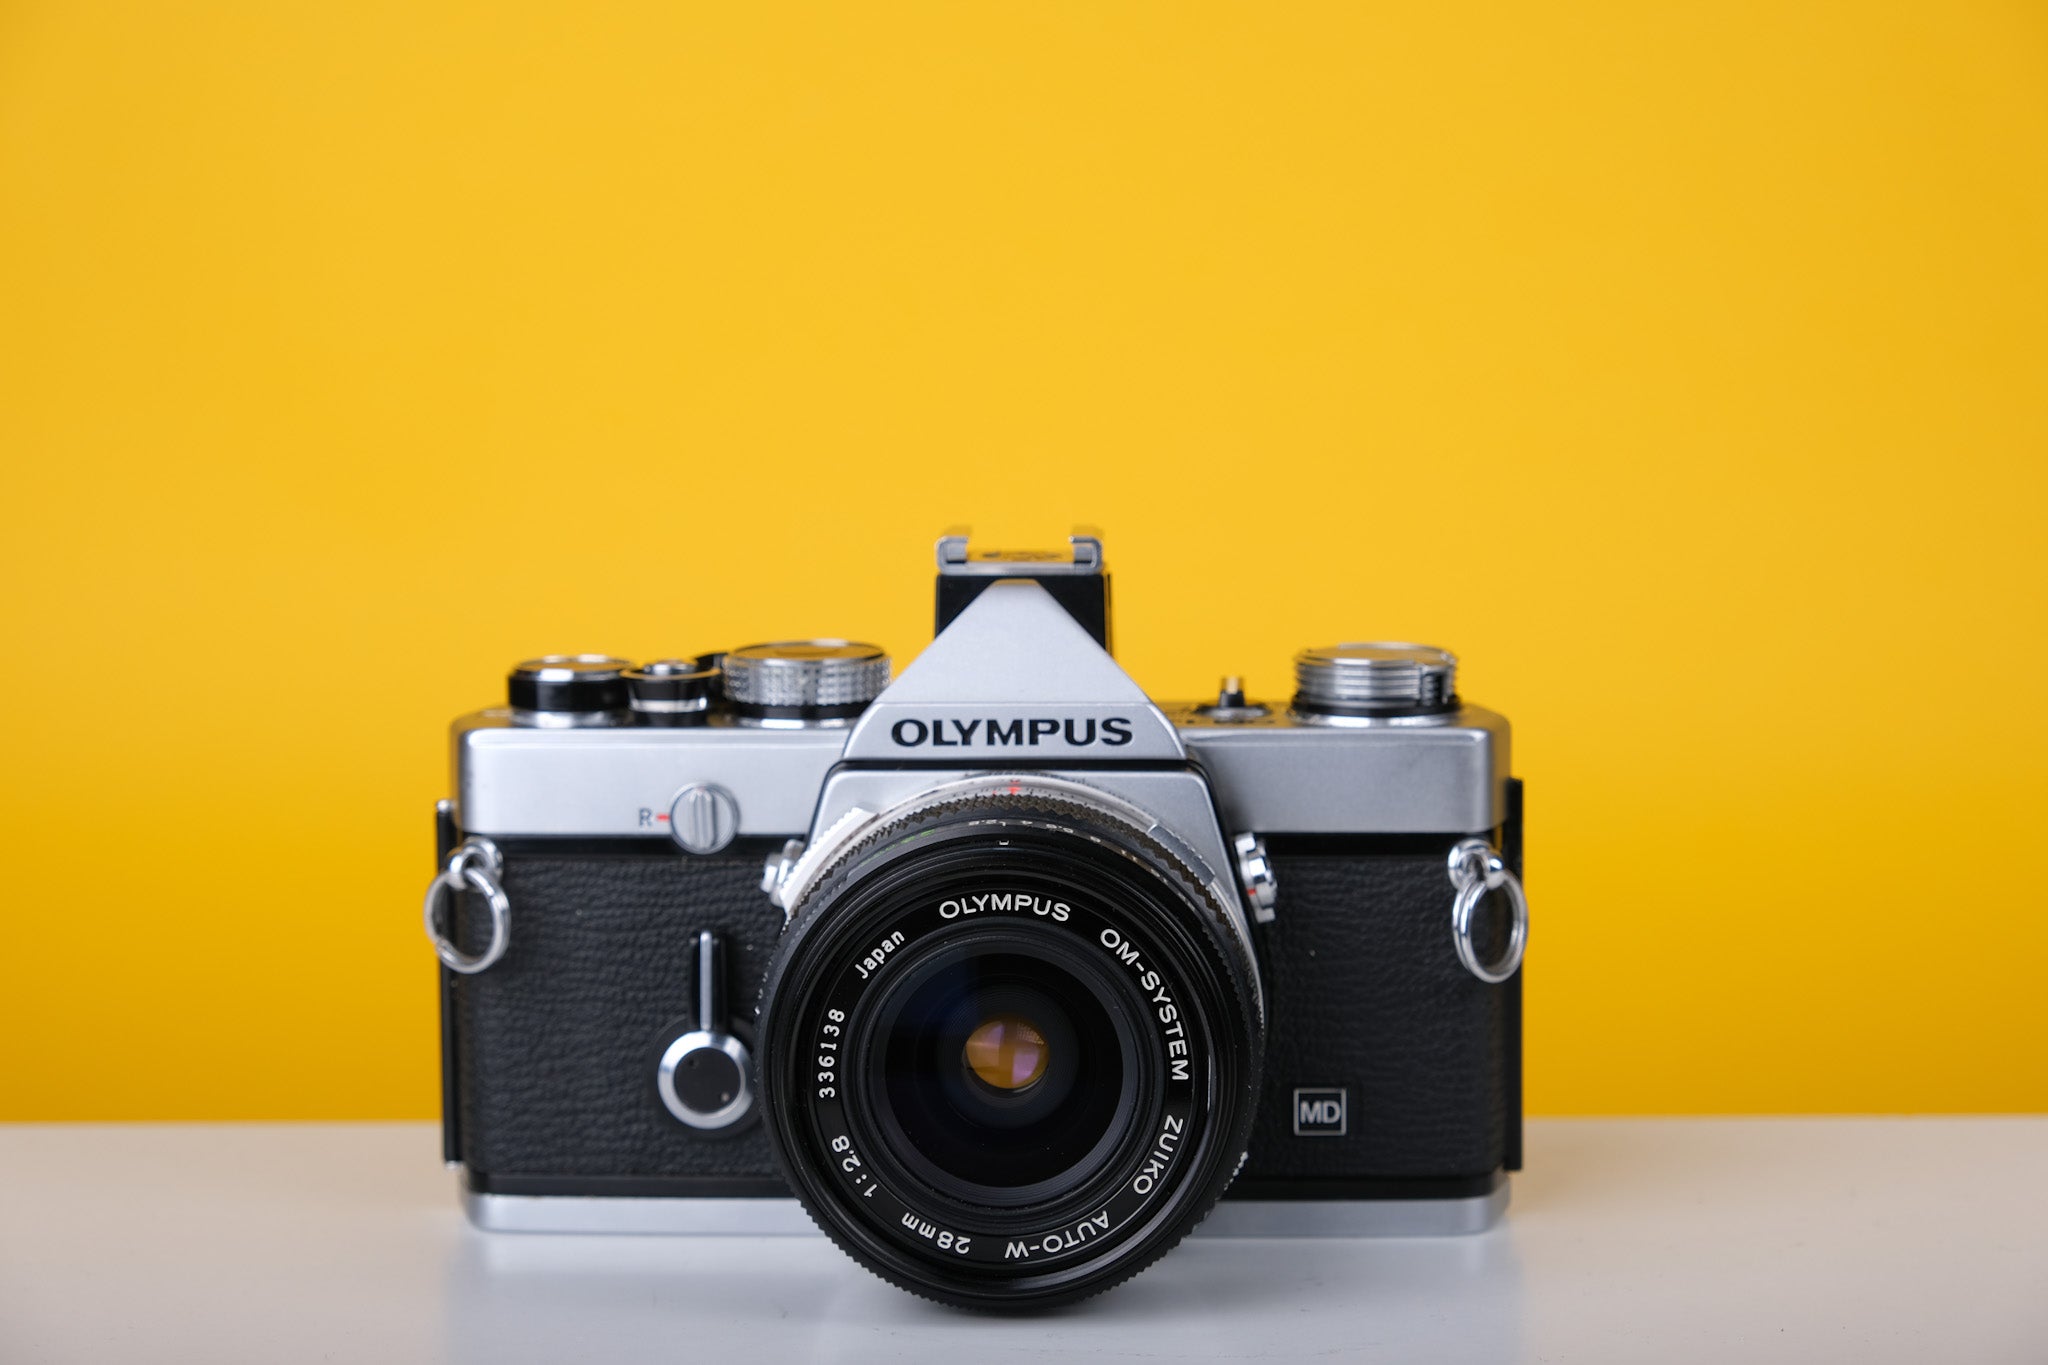 Olympus OM-1n 35mm SLR Film Camera with Zuiko 28mm f2.8 Lens